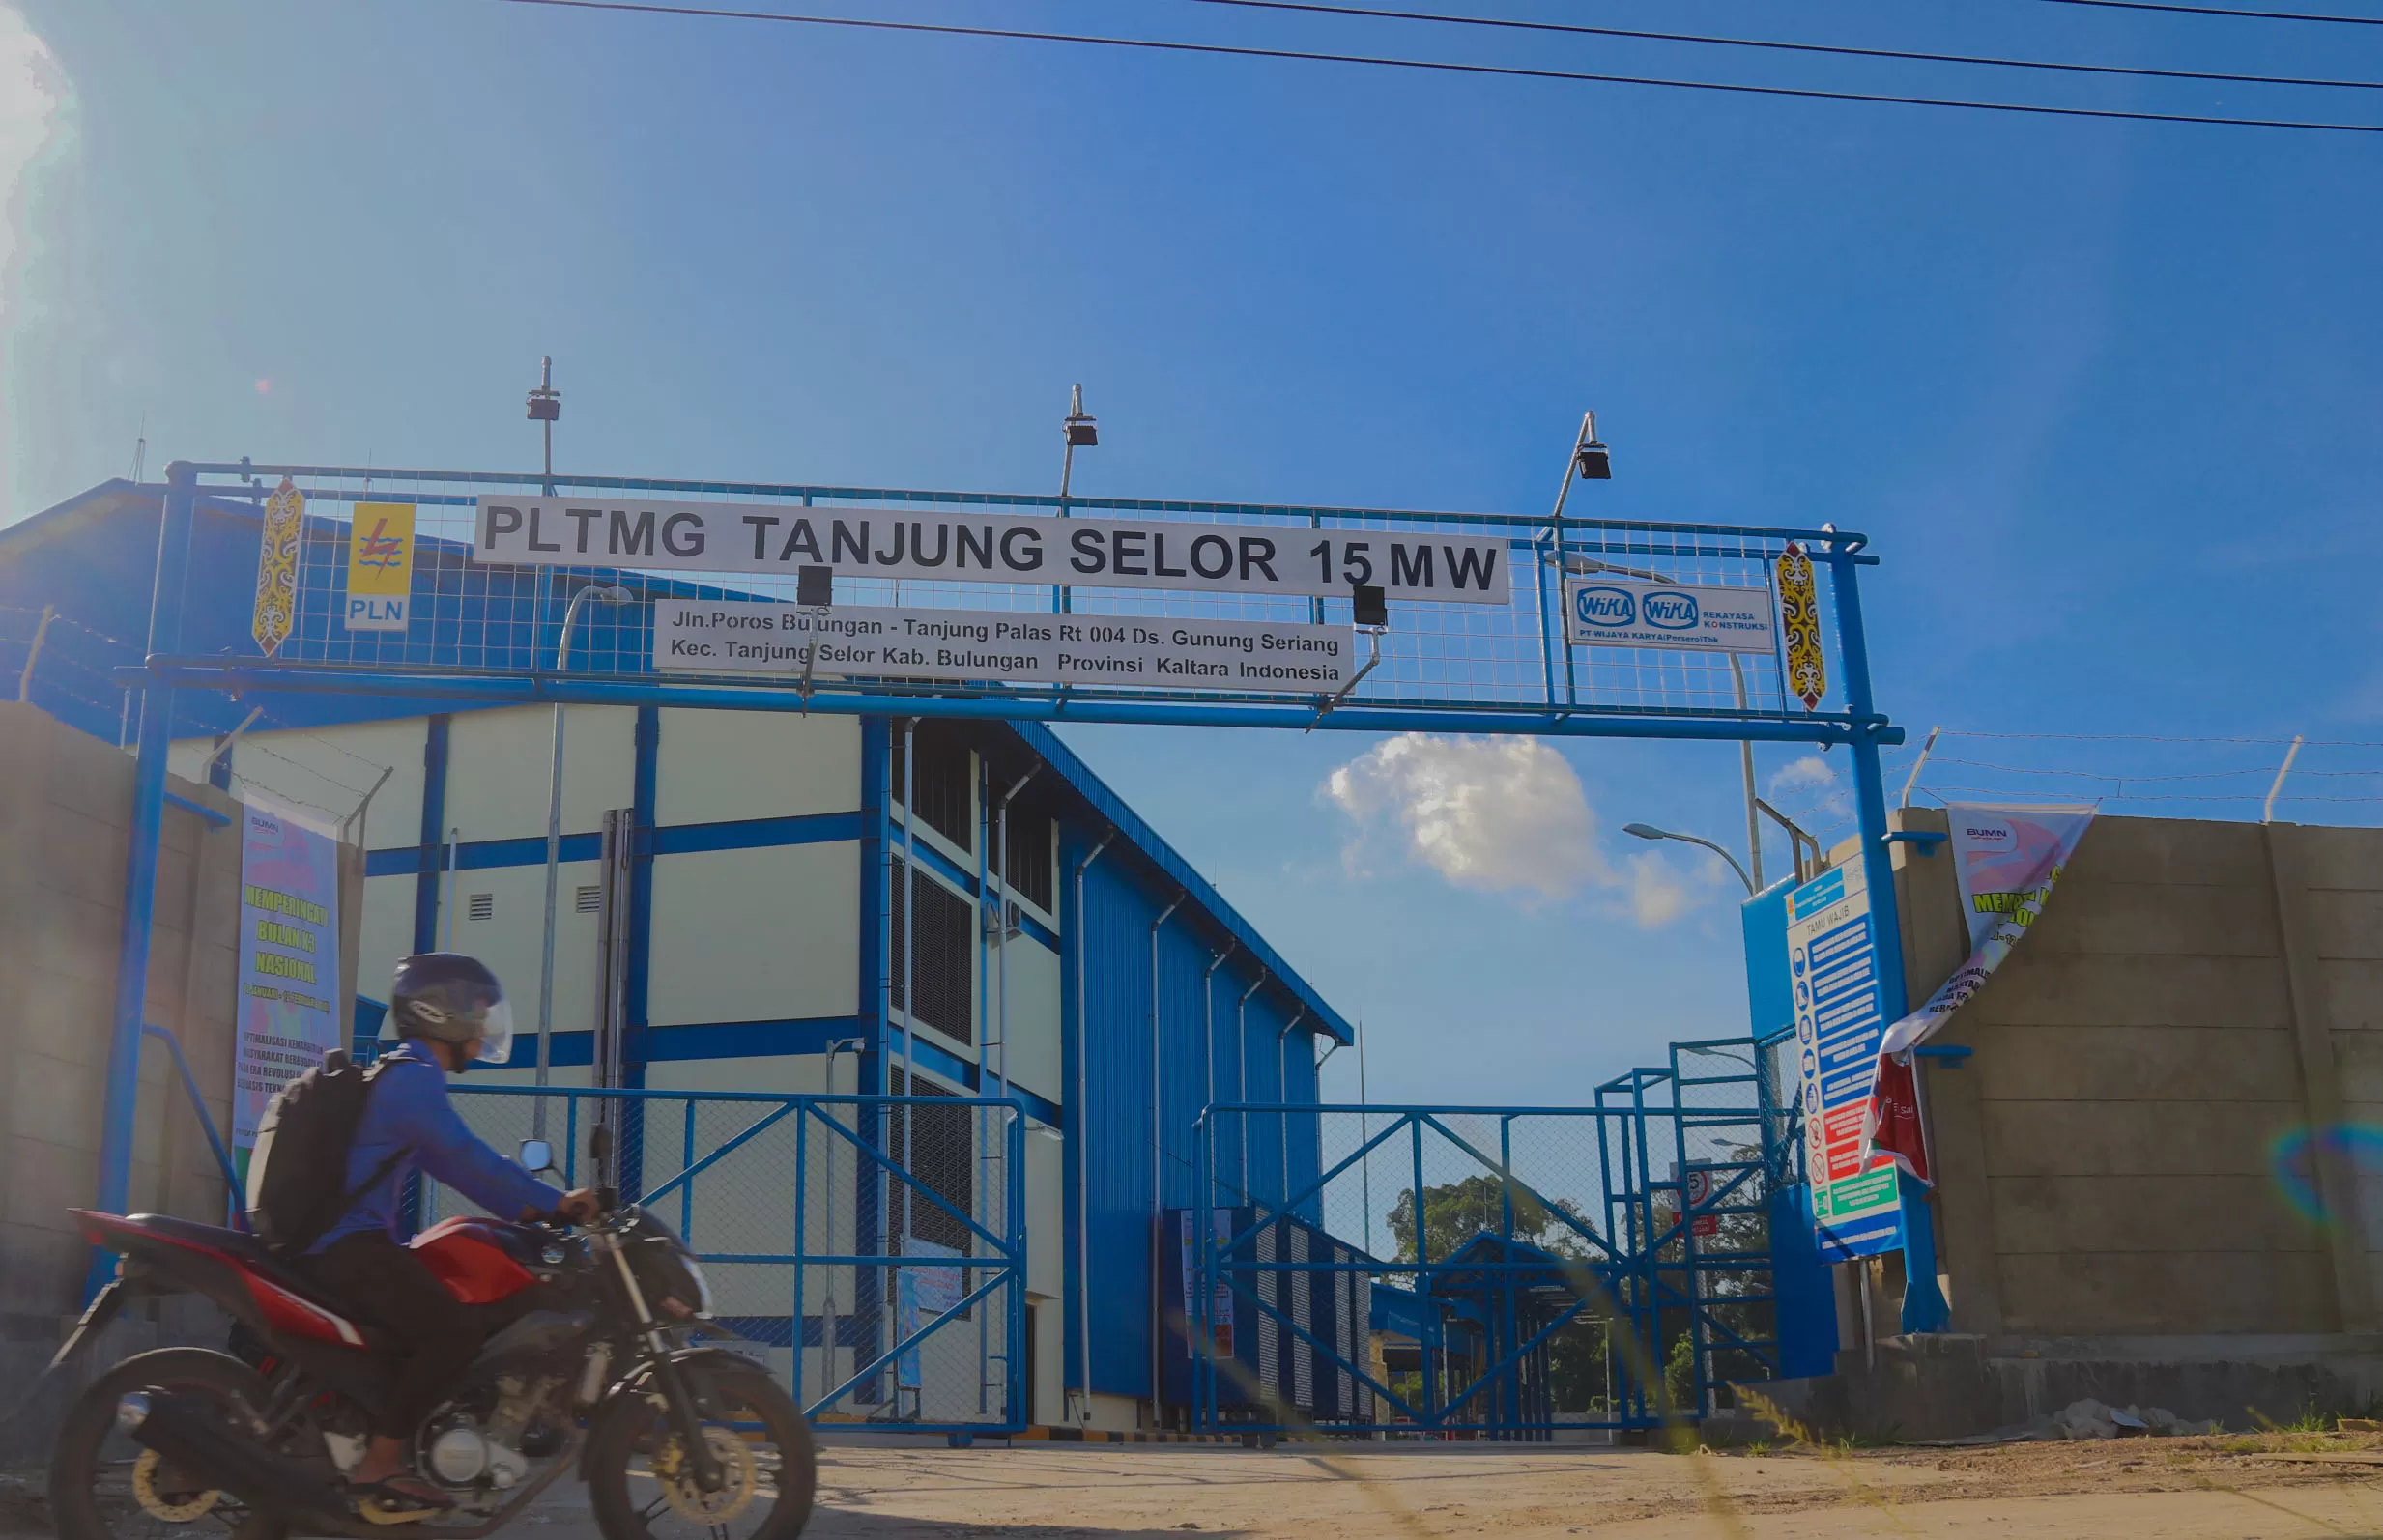 DAYA LISTRIK: Pembangkit Listrik Tenaga Mesin Gas (PLTMG) di Gunung Seriang yang telah beroperasi pada Desember 2019 lalu, berdampak positif terhadap daya listrik yang dibutuhkan PLN Tanjung Selor